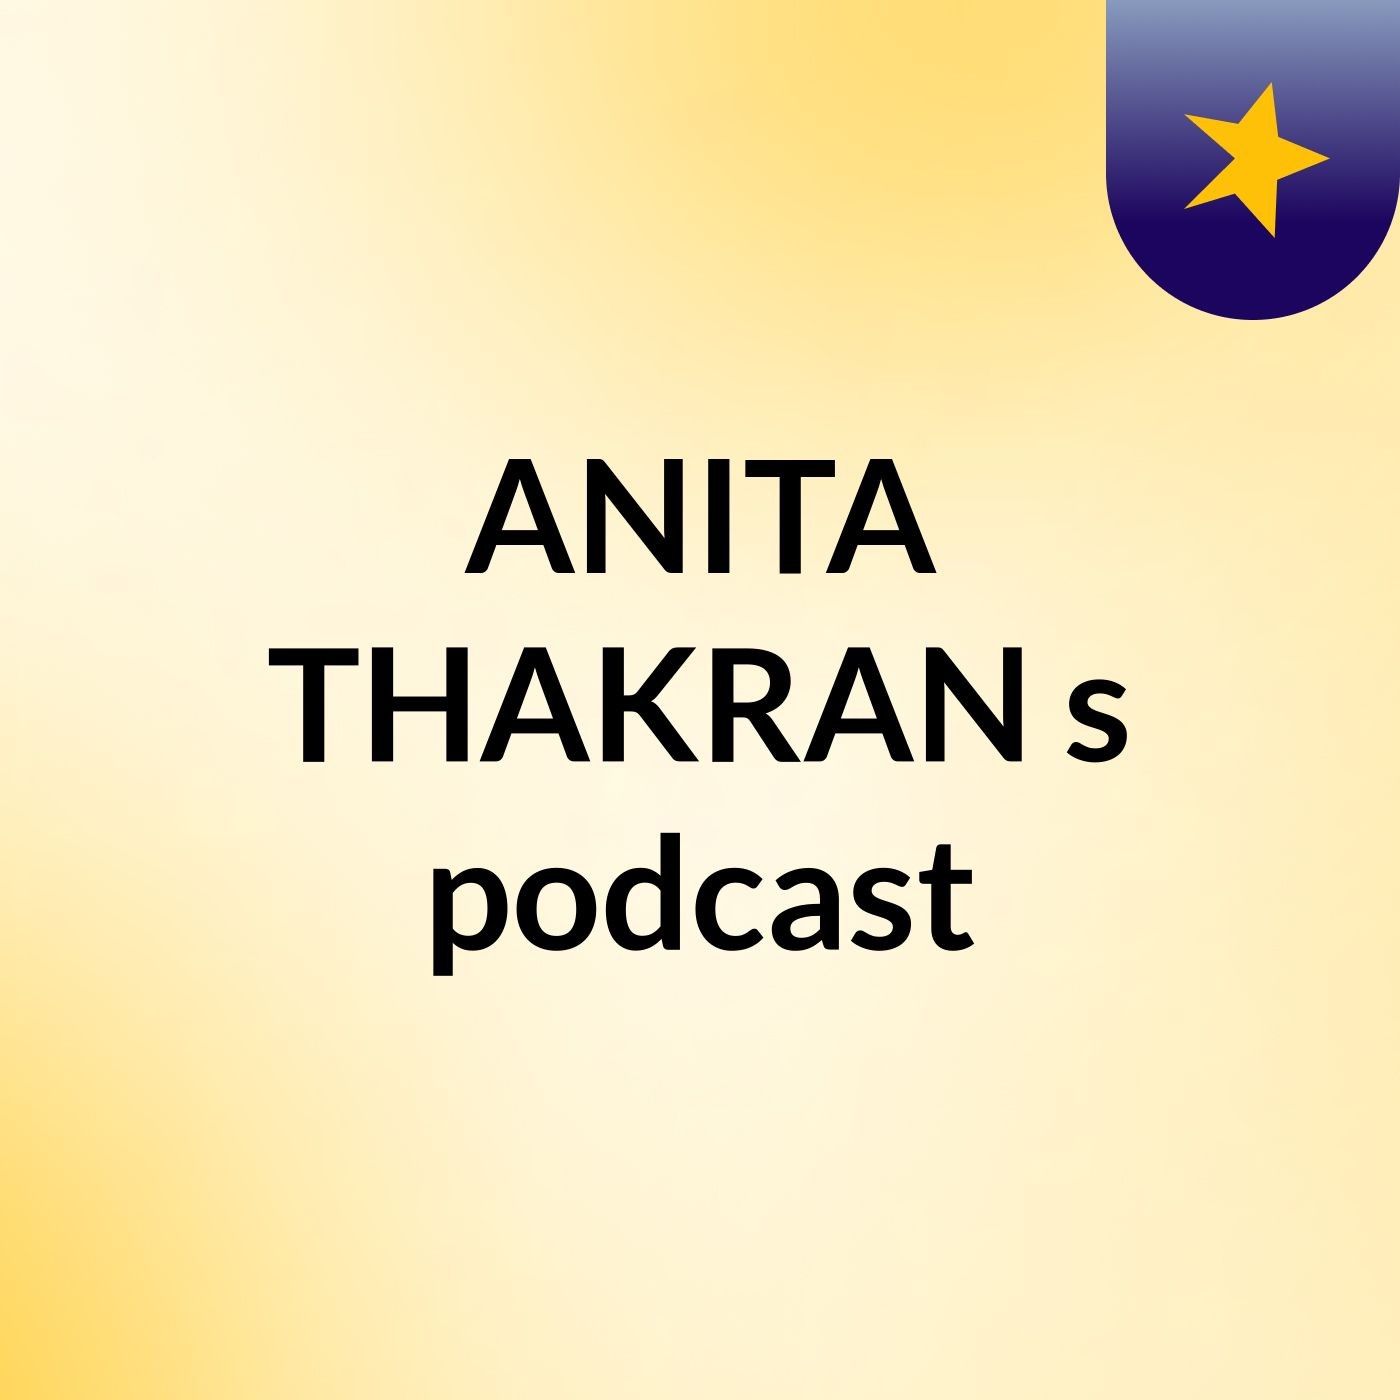 Episode 3 - ANITA THAKRAN's podcast